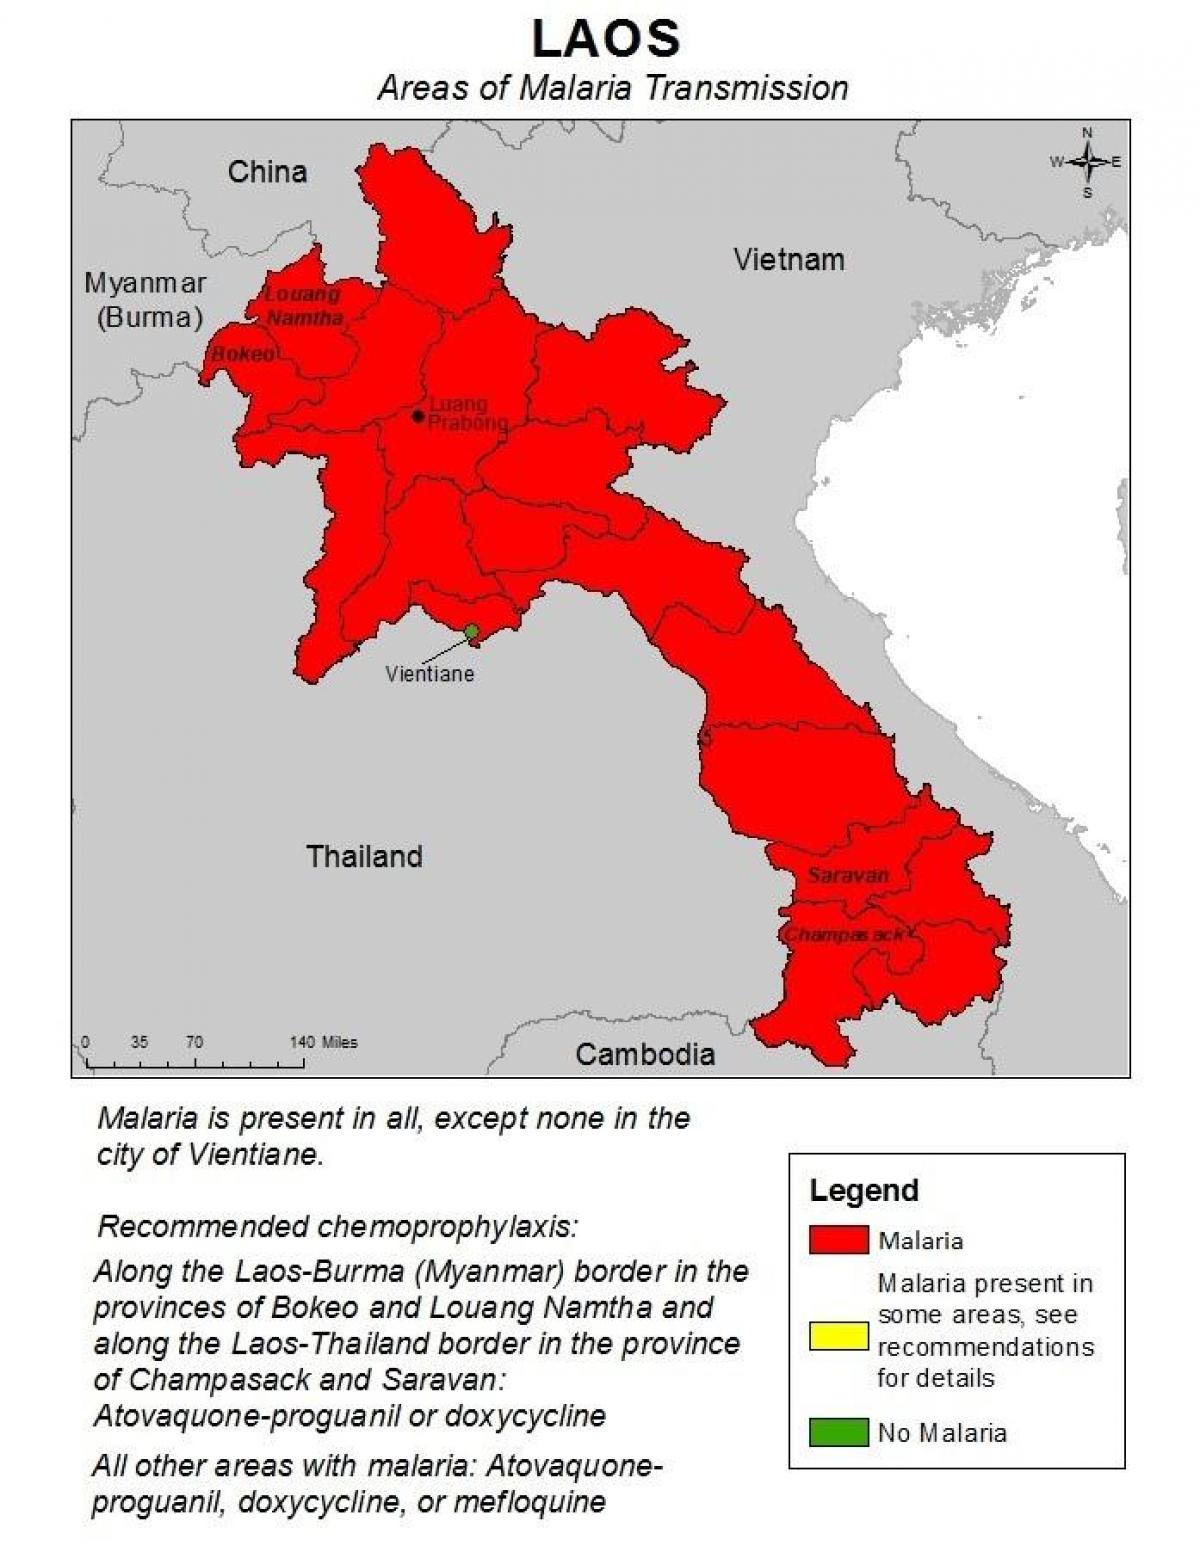 რუკა ლაოსი მალარიის 